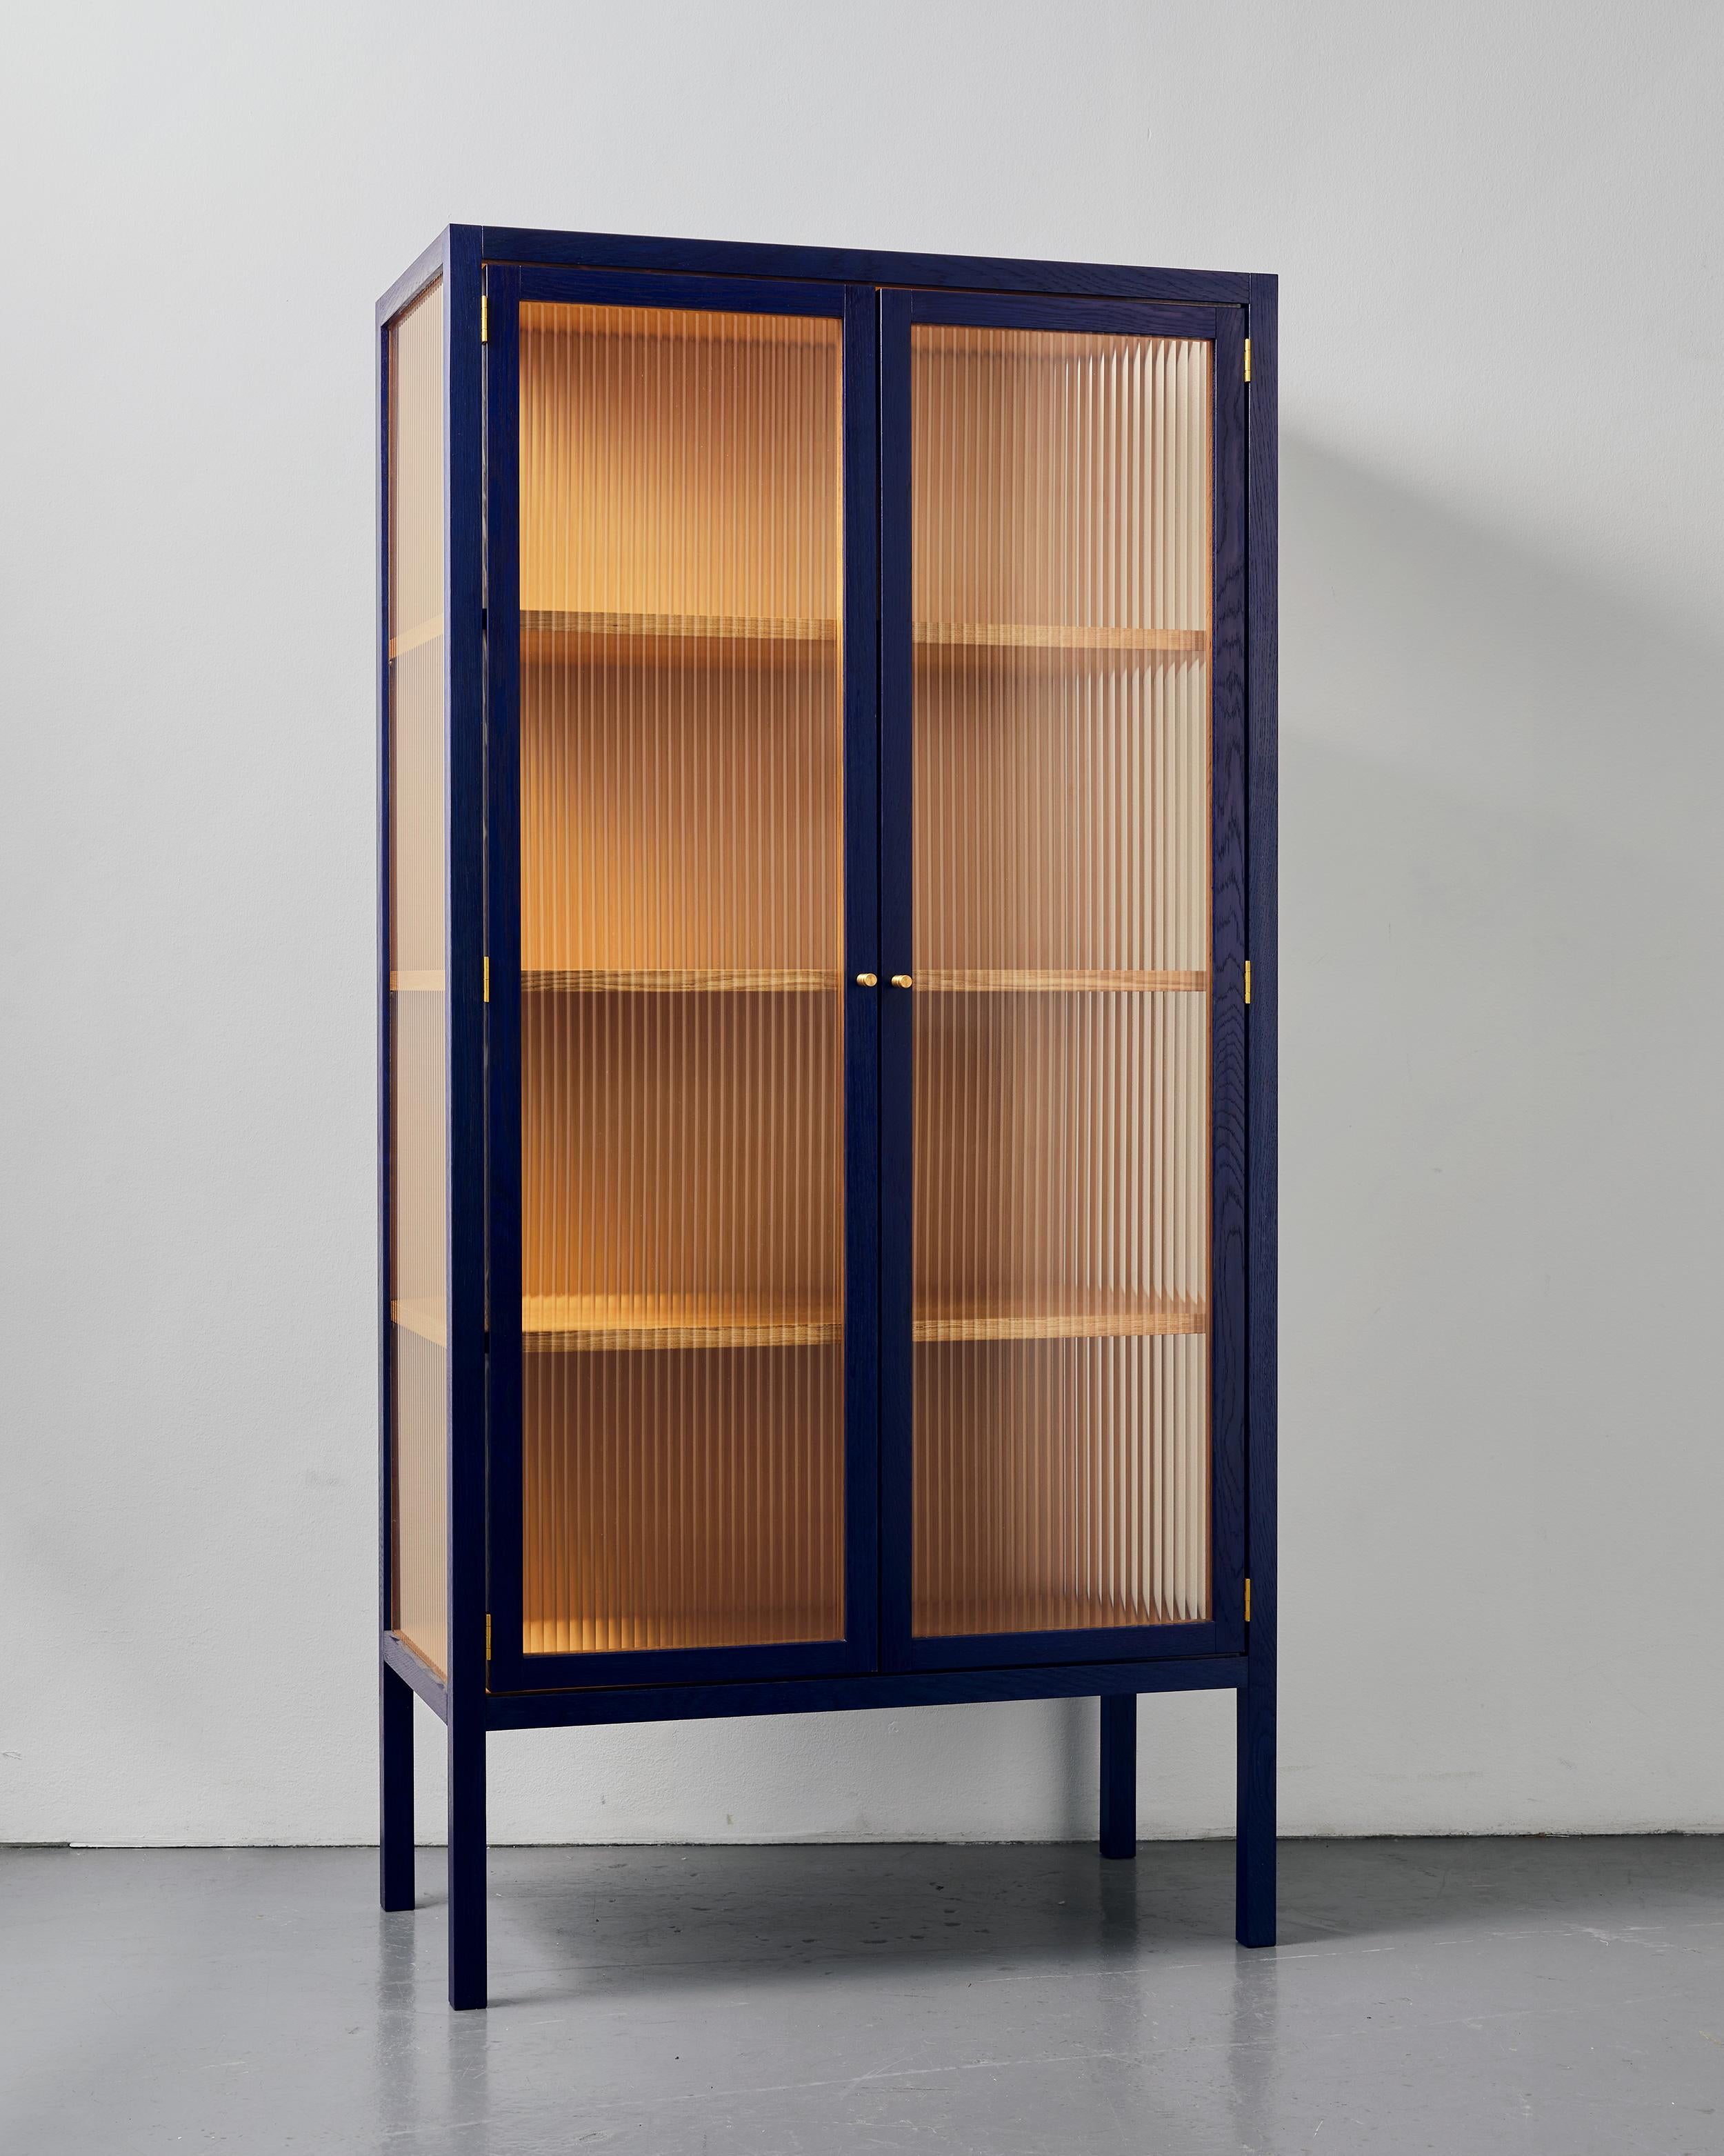 Alma Cabinet ist ein minimalistischer Schrank, der vom Kopenhagener Atelier BACD Studio entworfen wurde. Der Schrank Alma ist aus einer Vision von einfacher, aber guter Handwerkskunst entstanden. Die klare Silhouette aus hochwertigen MATERIALEN wird